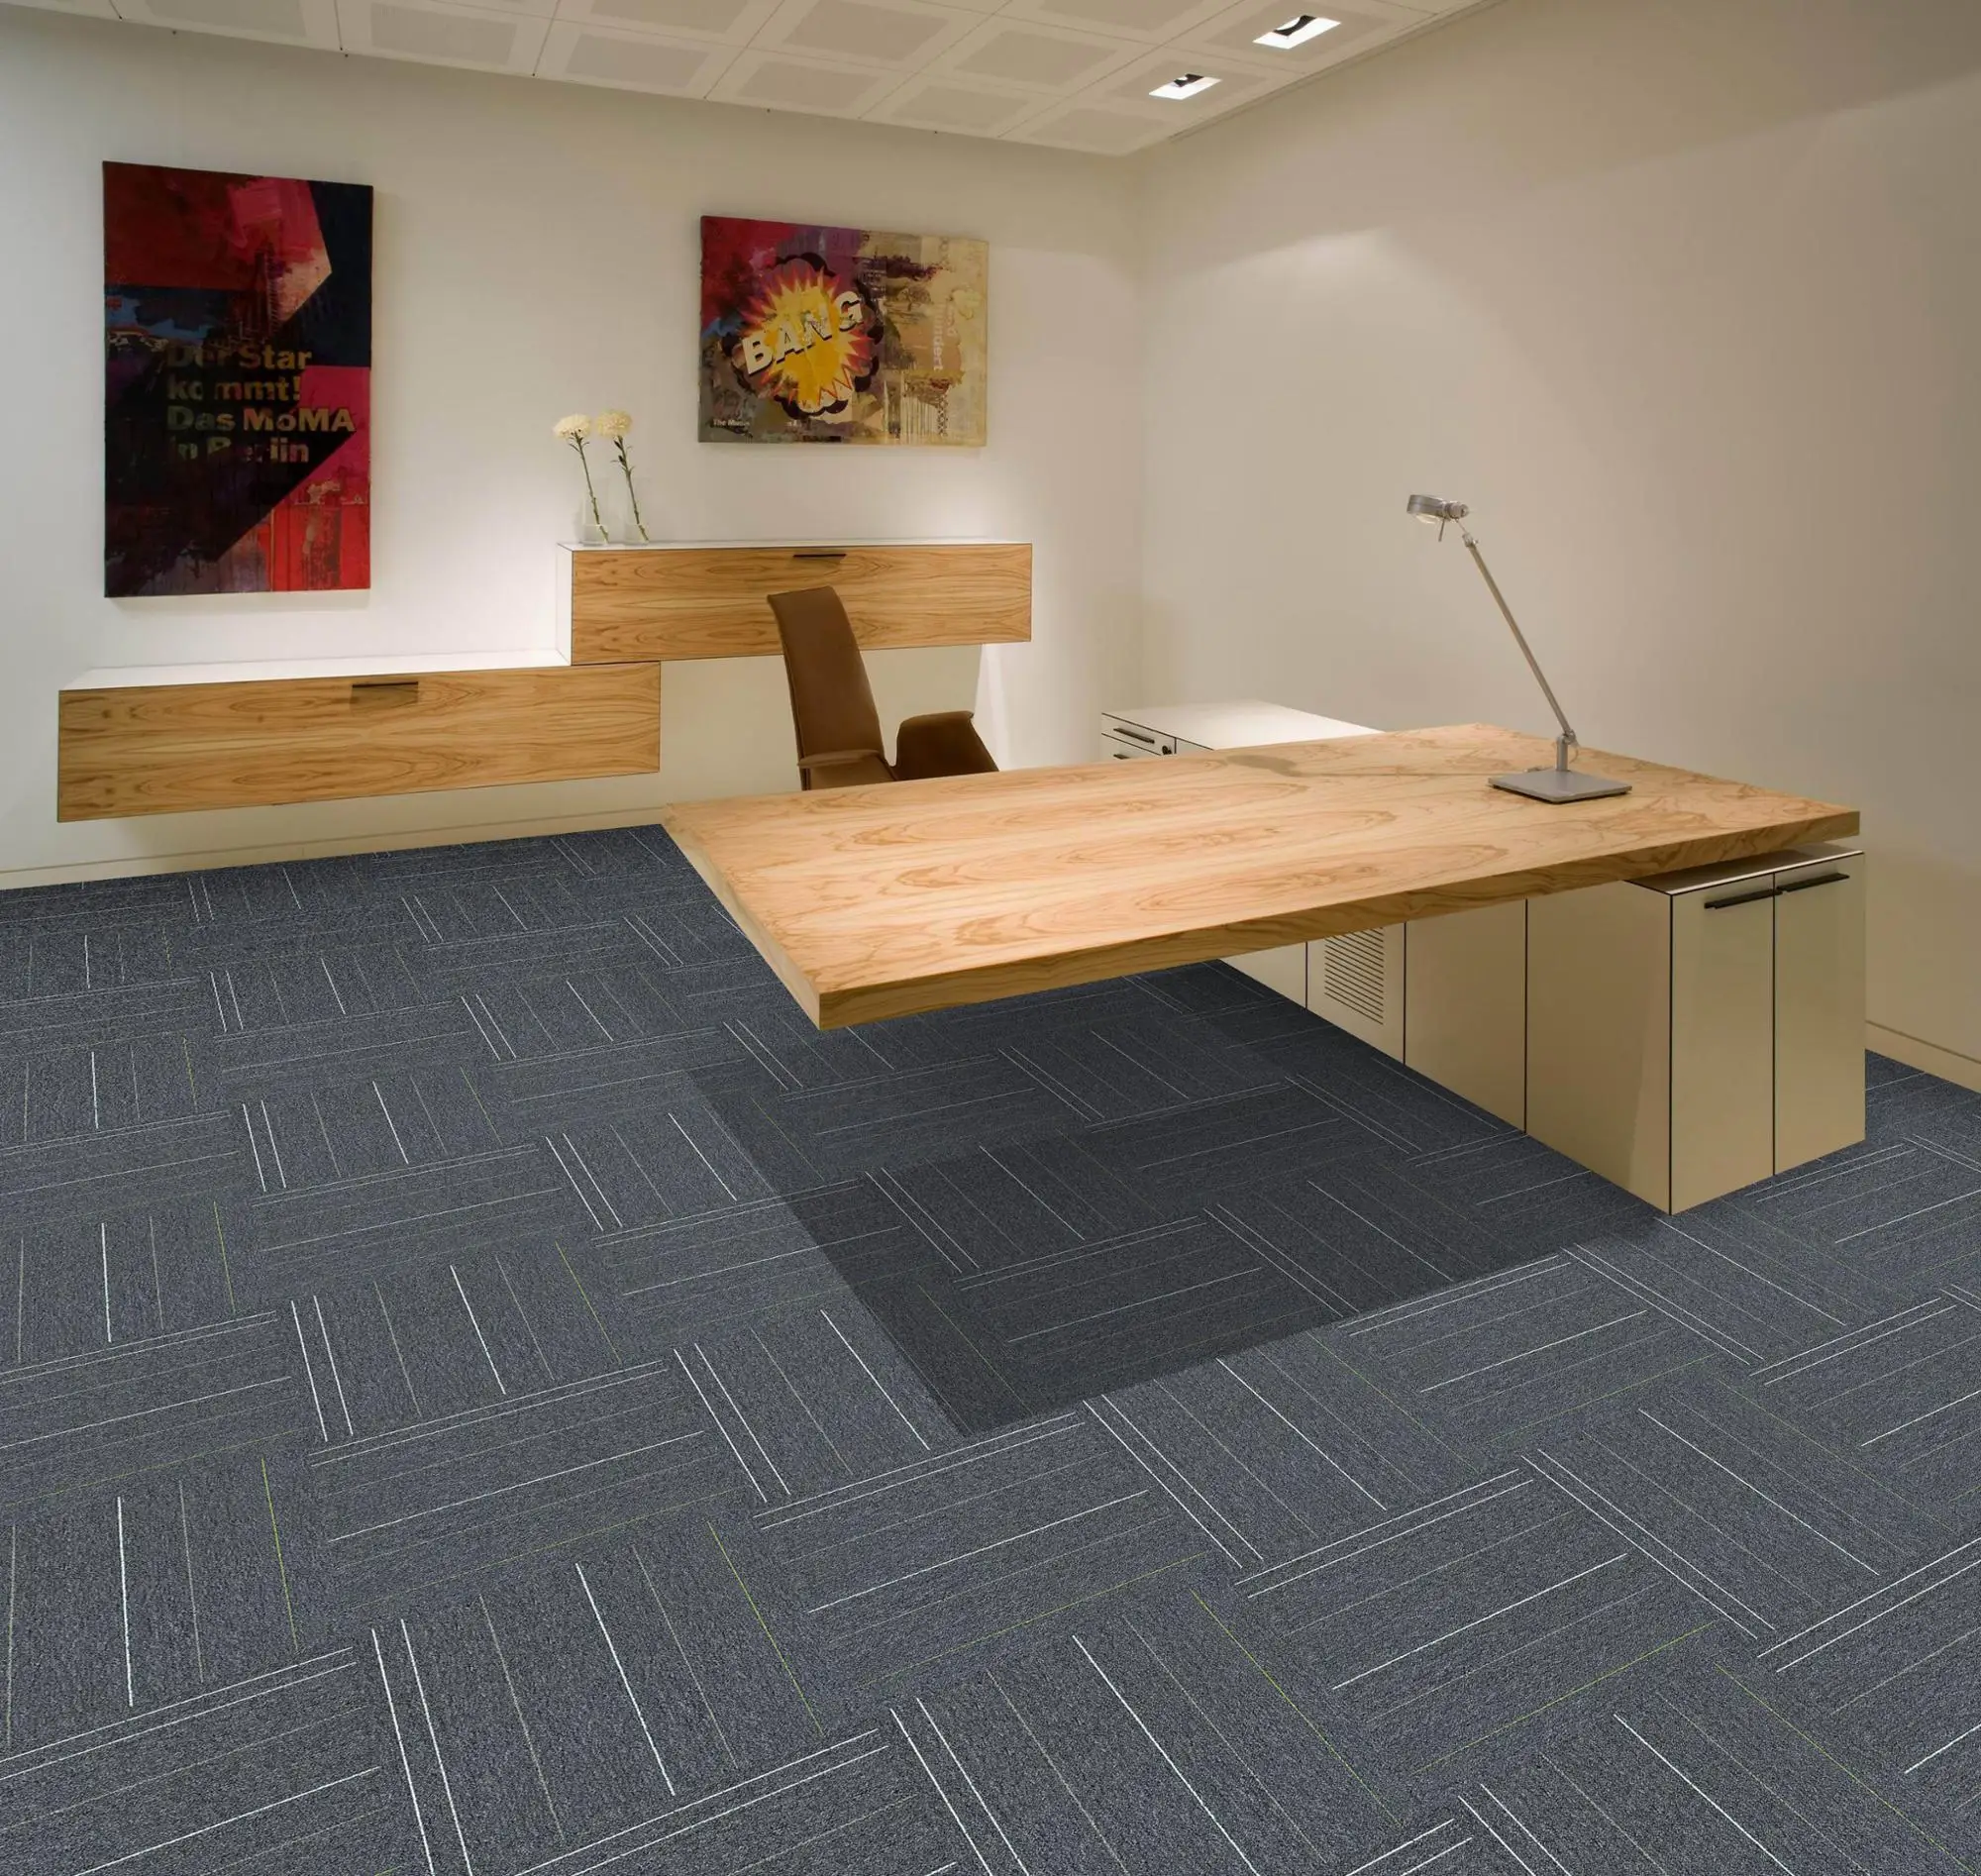 Modern Design Office Carpet Tile Nylon /PP Solution Dyed 50x50cm